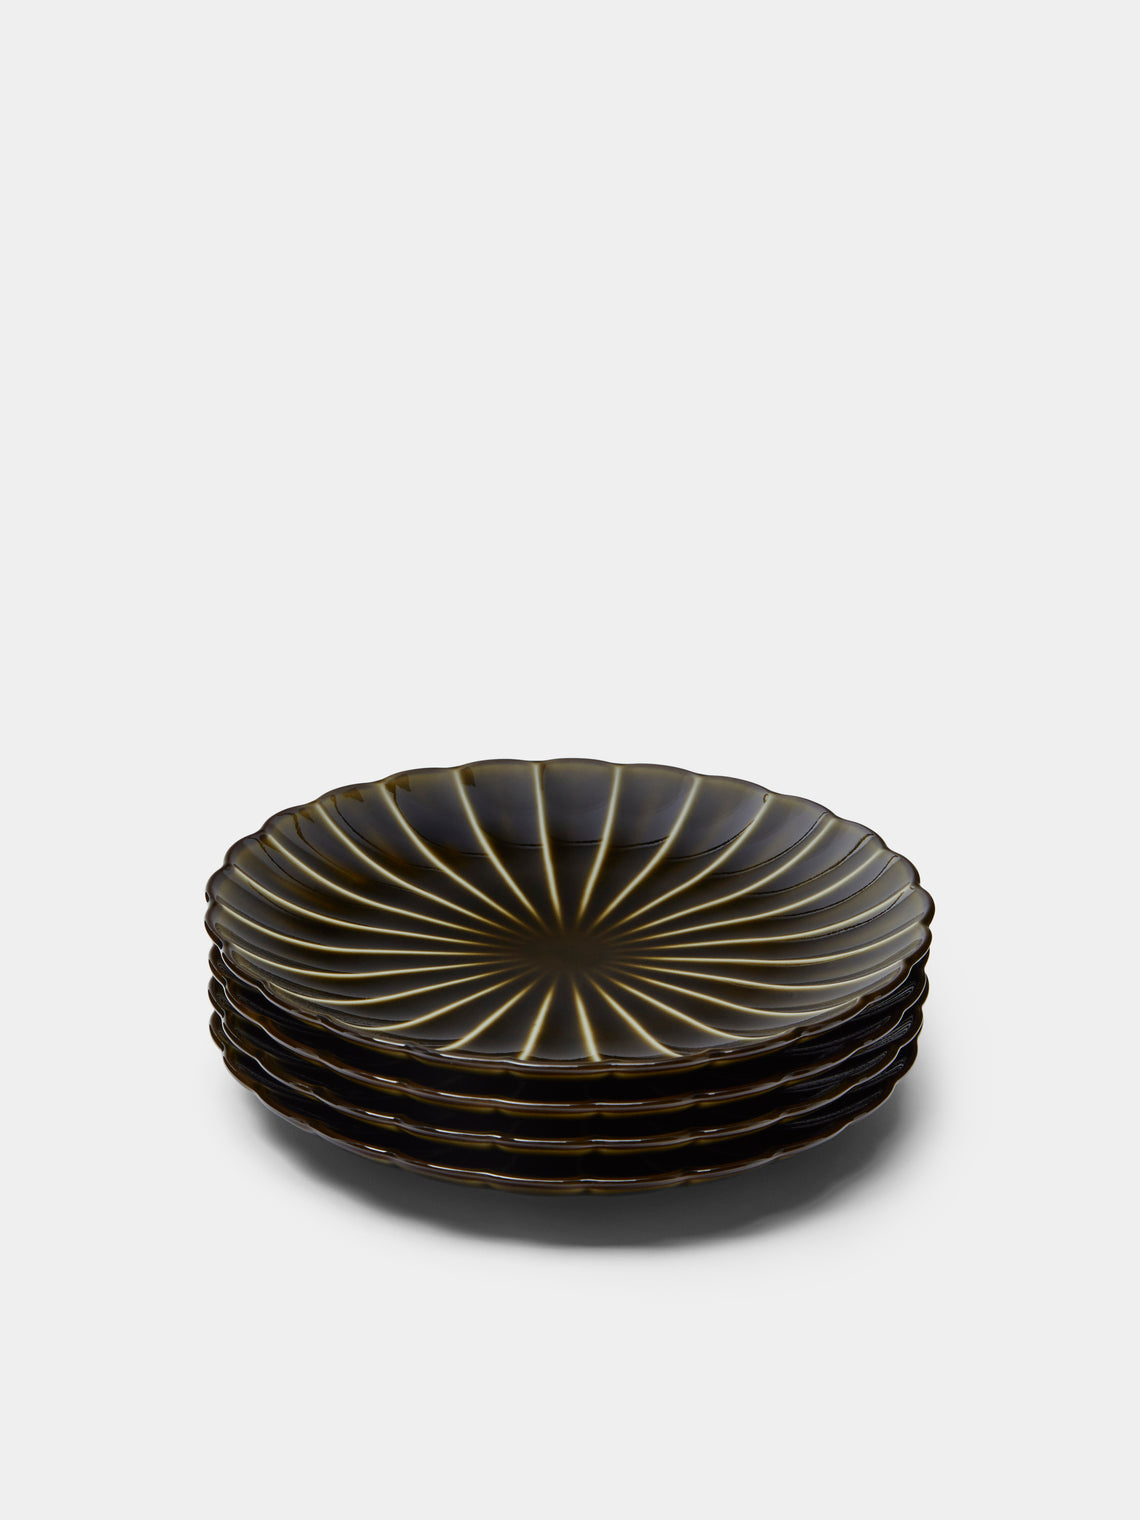 Kaneko Kohyo - Giyaman Urushi Ceramic Side Plates (Set of 4) - Green - ABASK